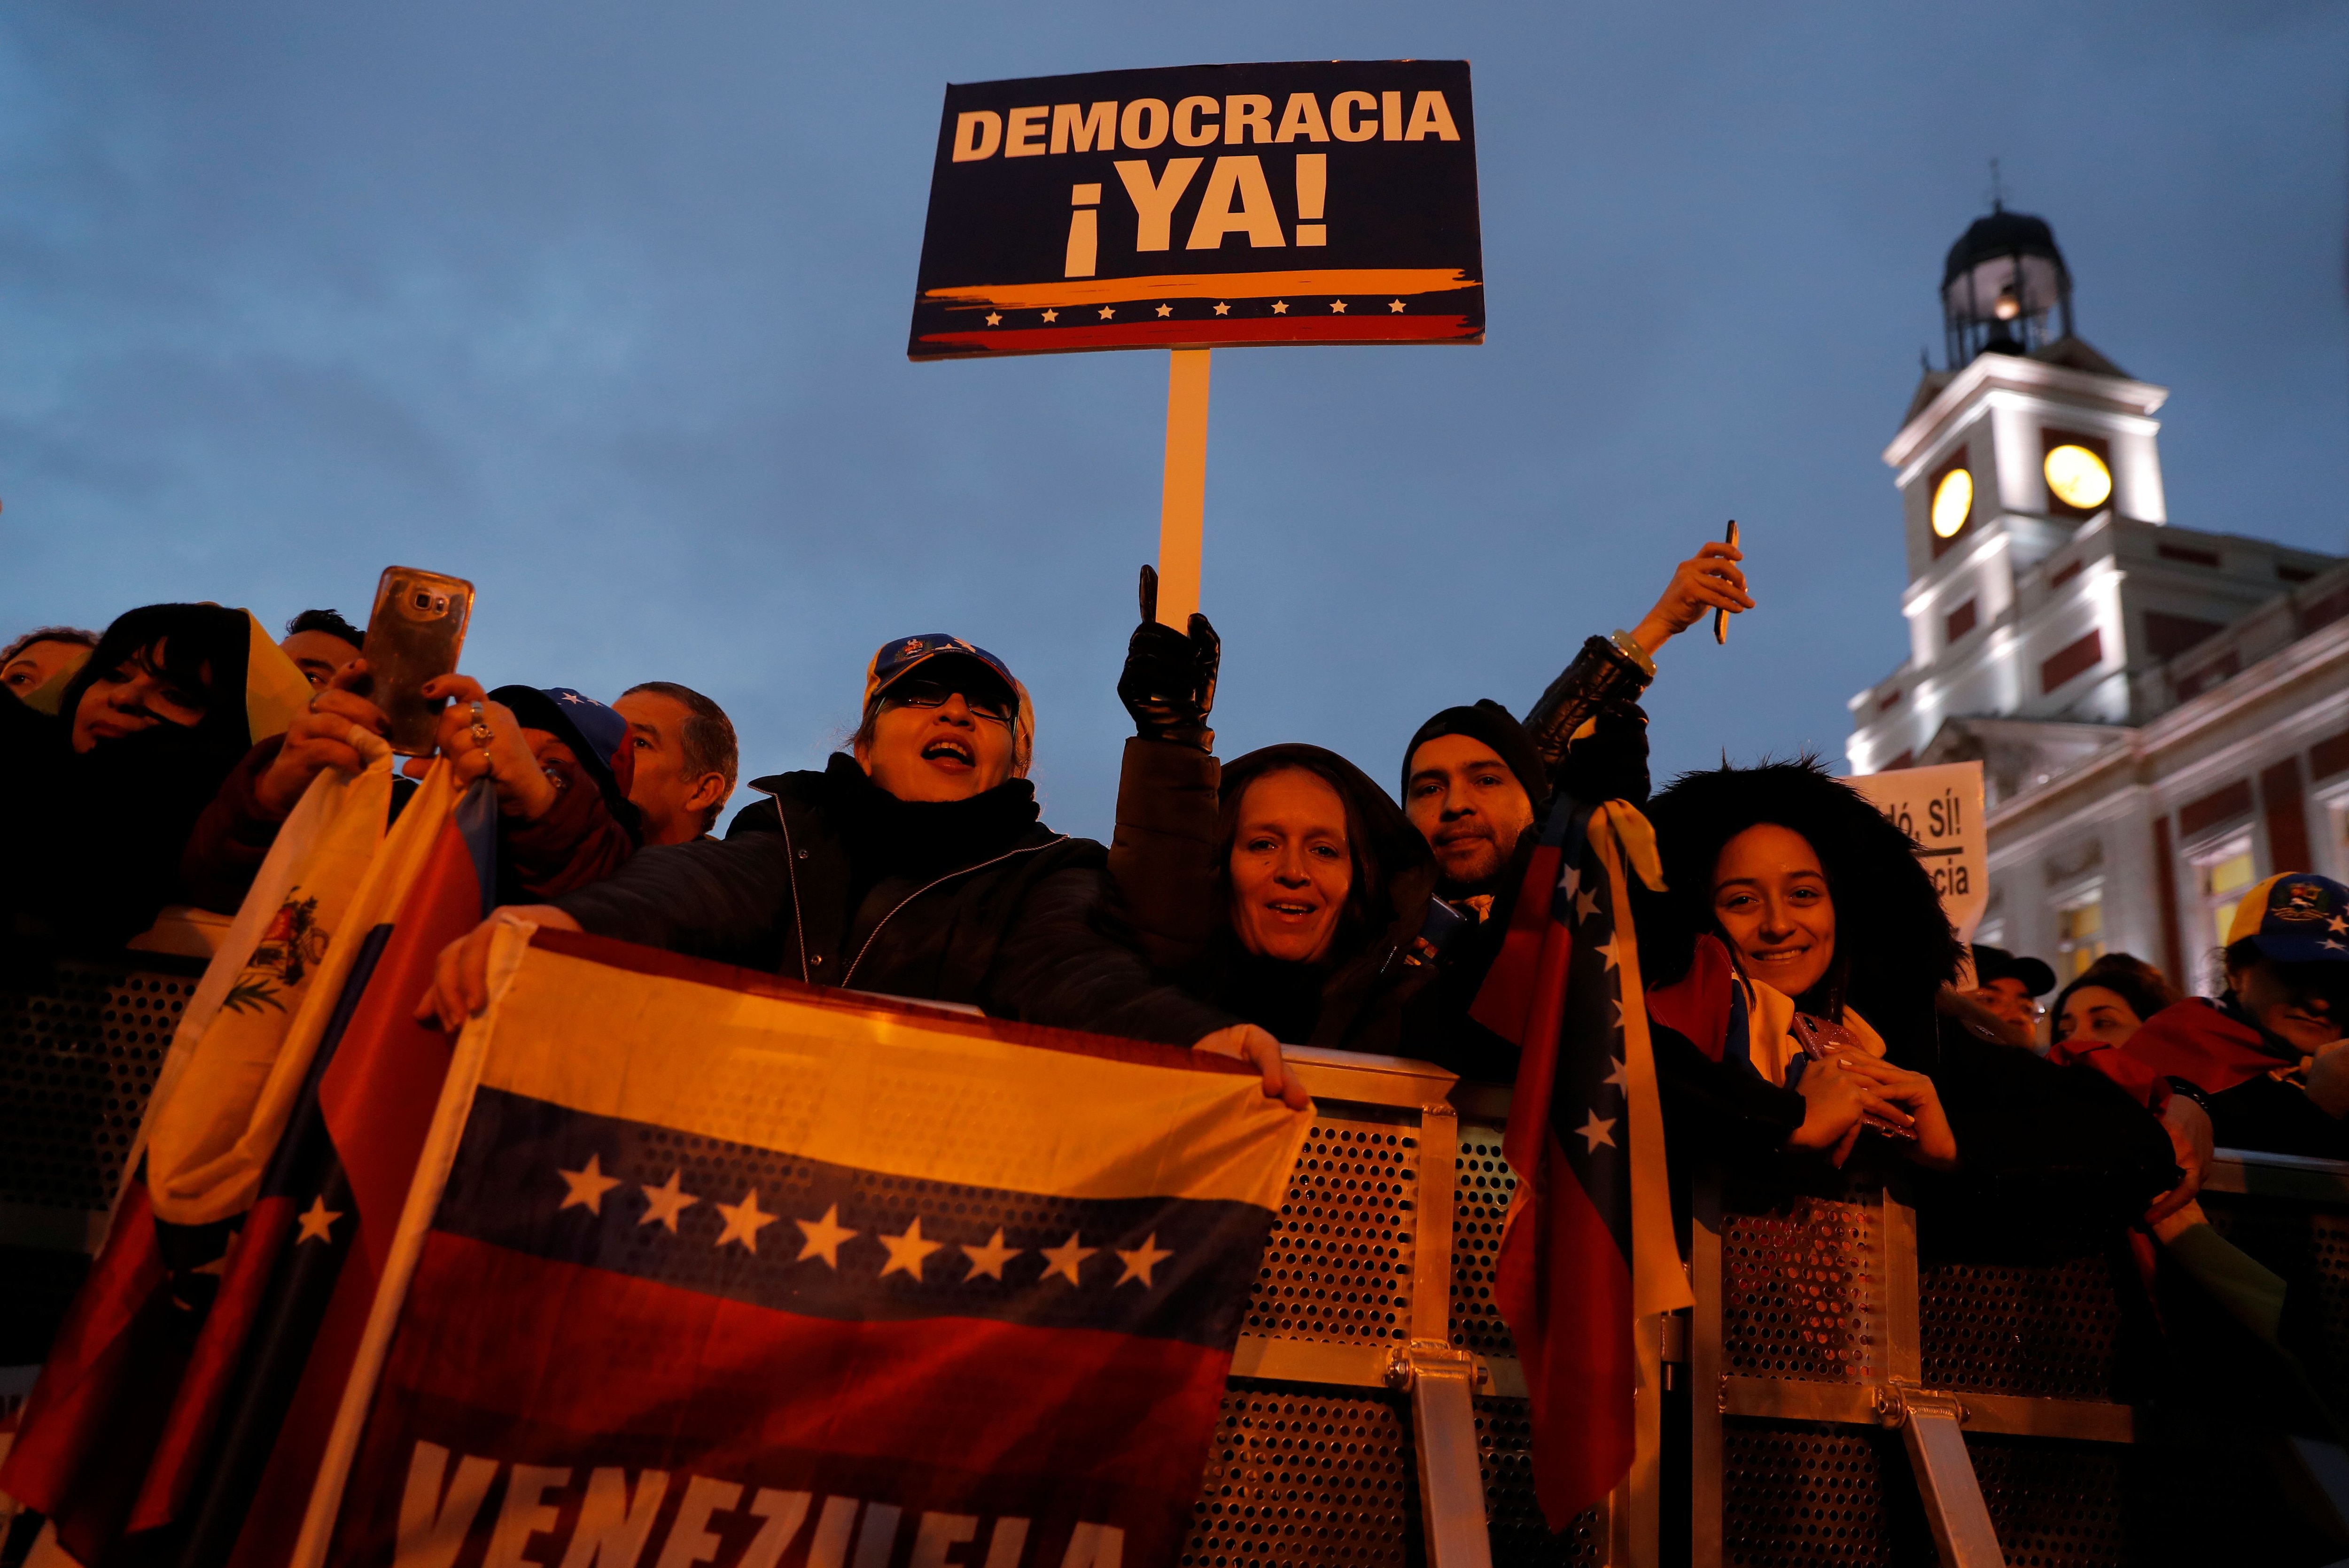 Manifestación en Madrid, 25 de enero de 2020 (Foto: REUTERS/Susana Vera)